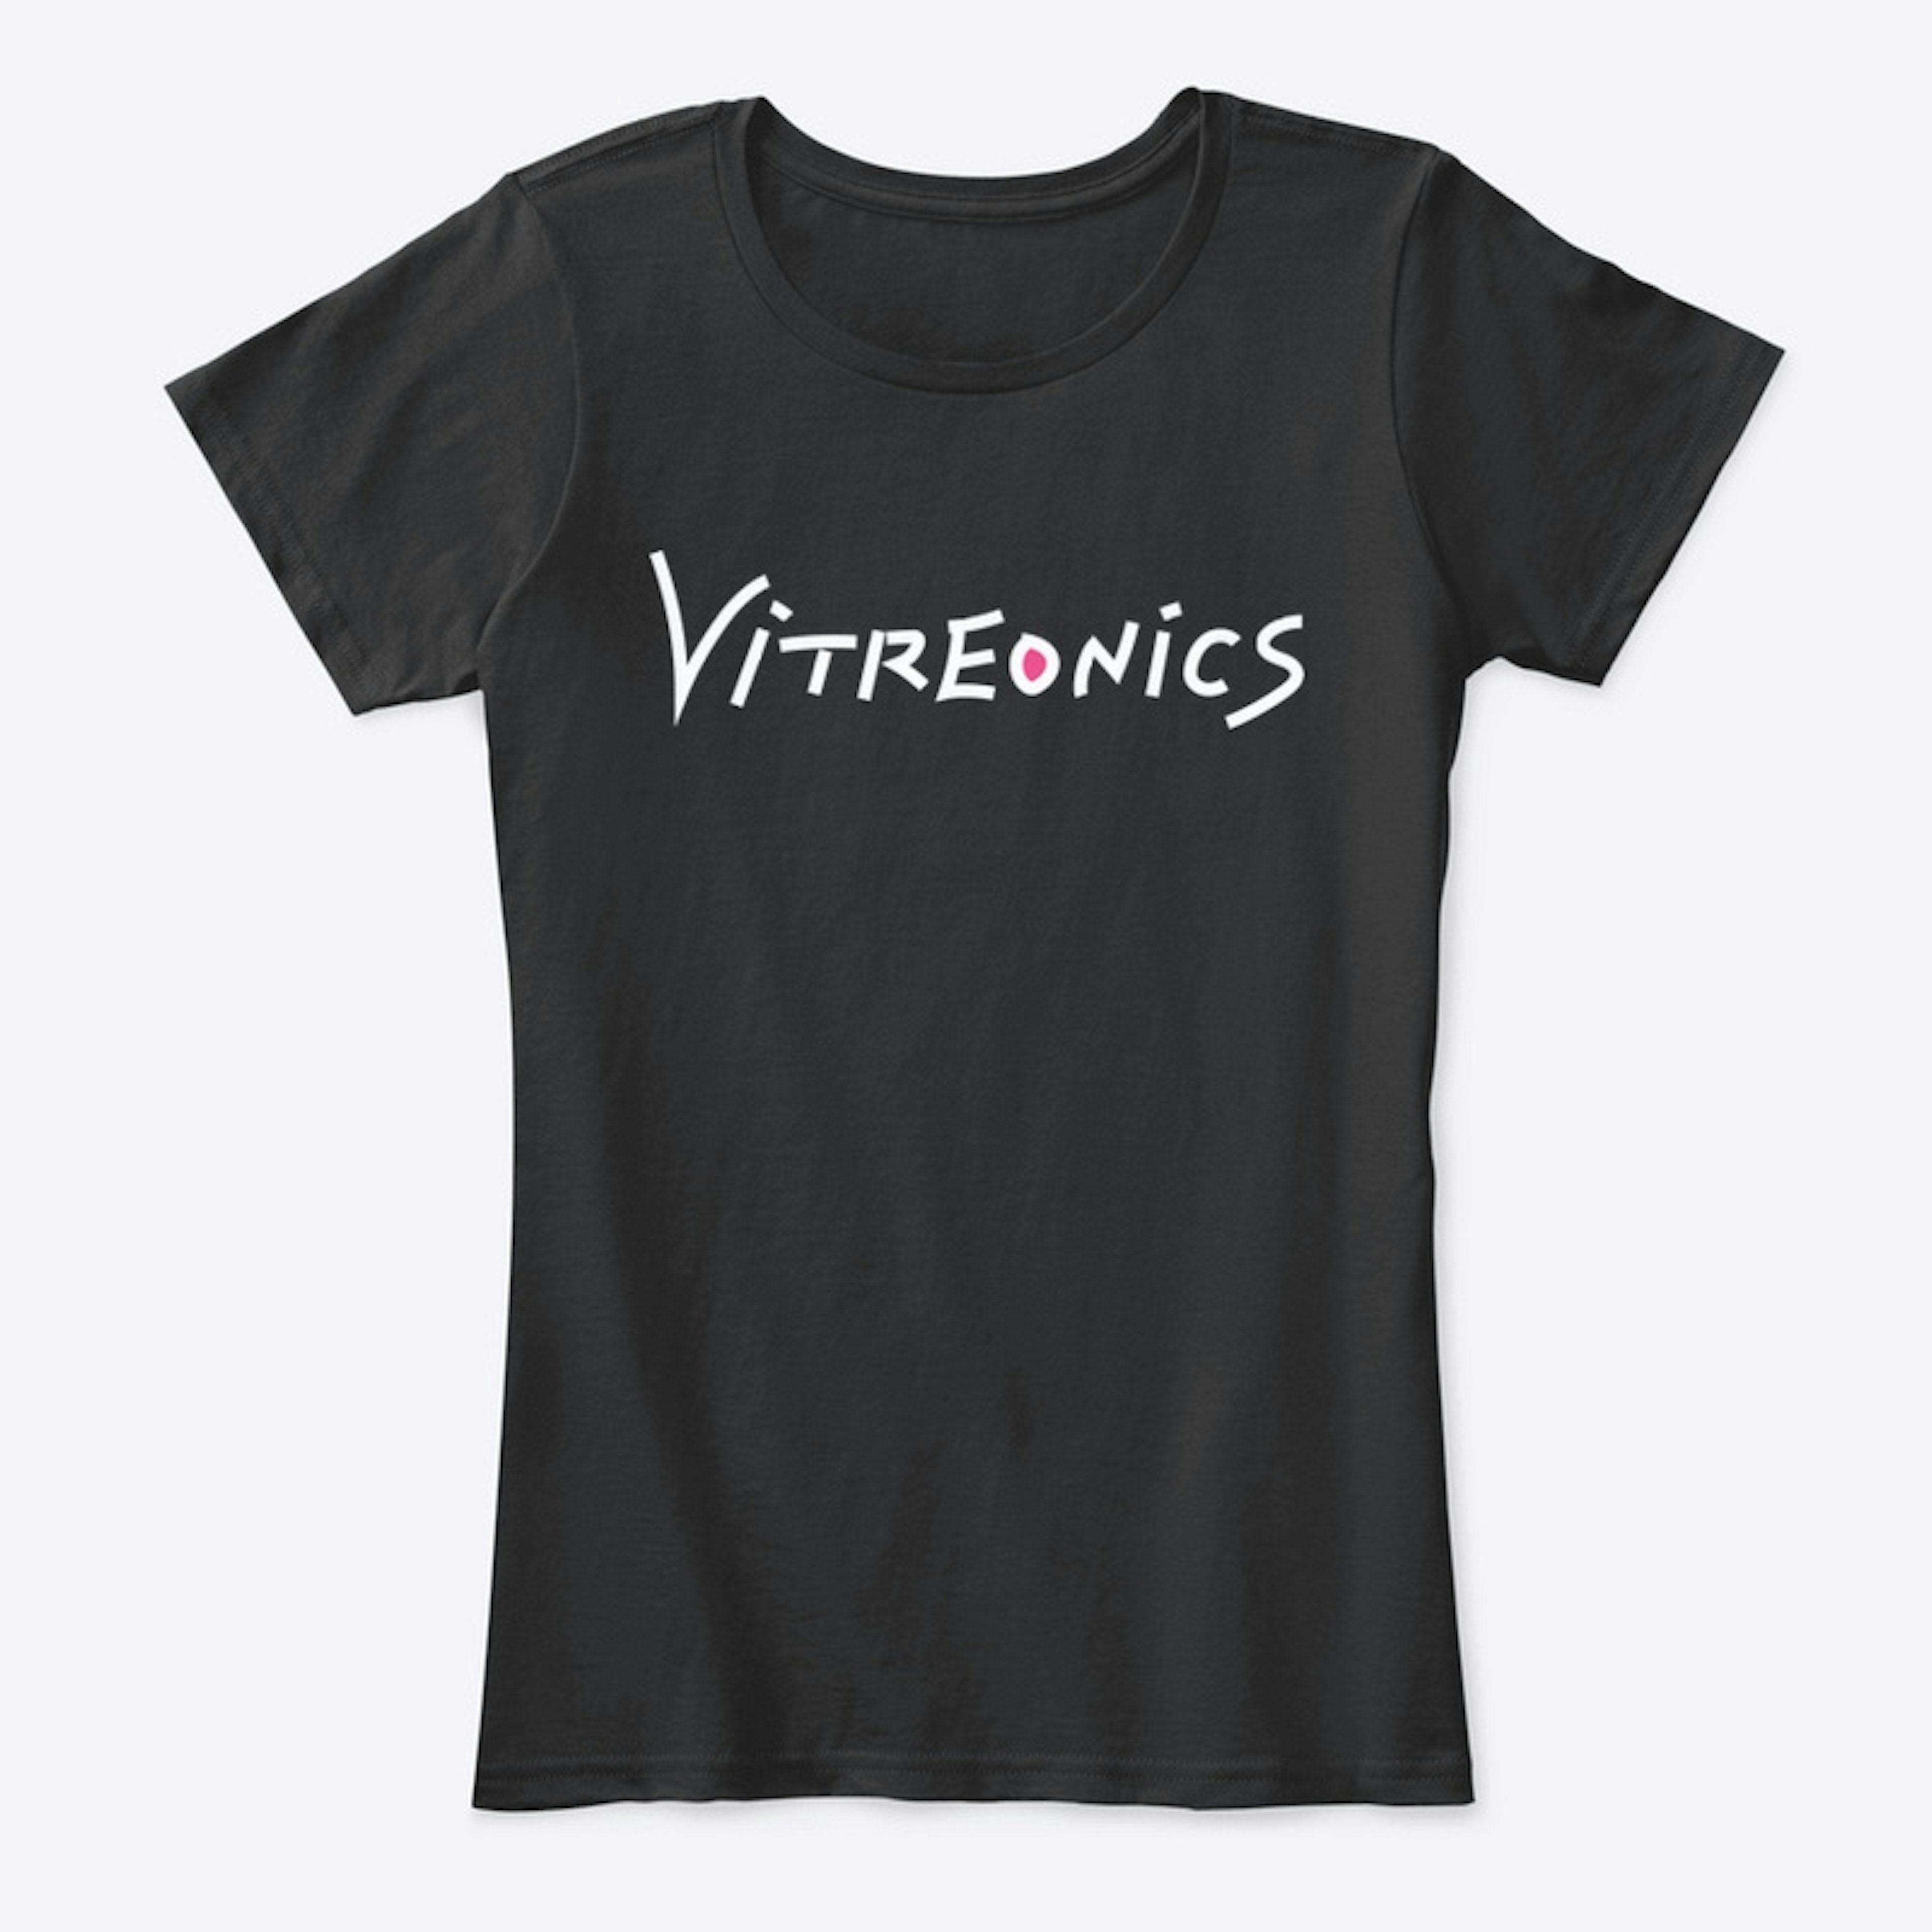 Vitreonics 